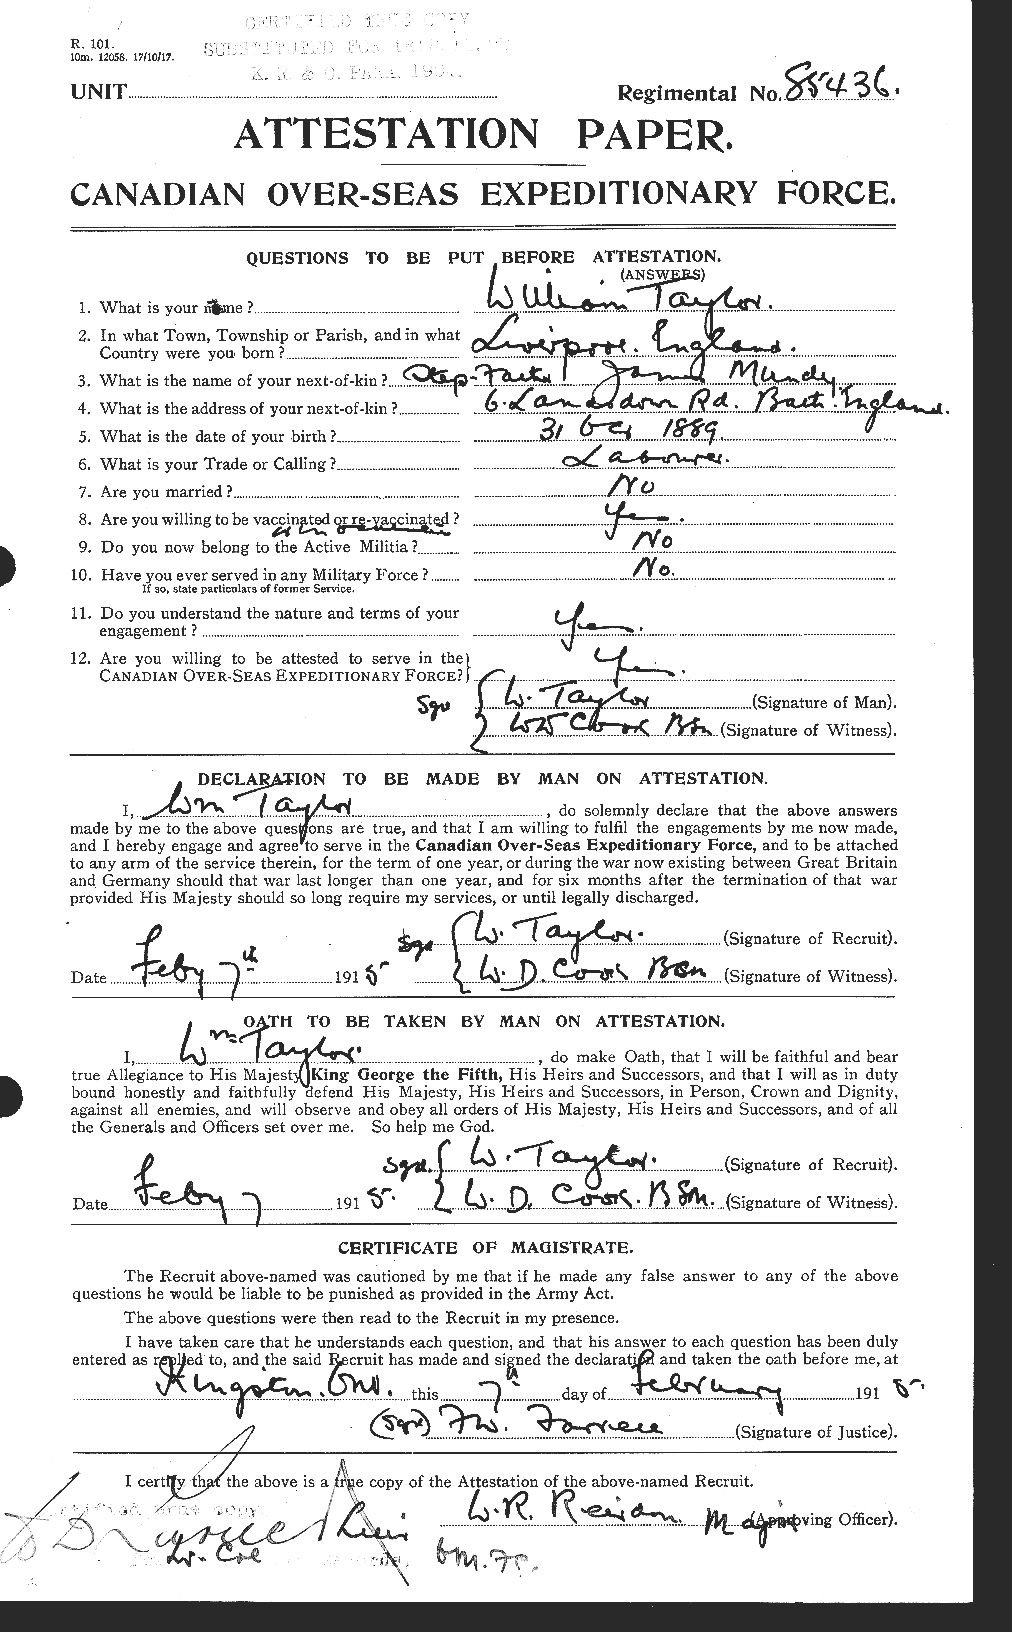 Dossiers du Personnel de la Première Guerre mondiale - CEC 628153a